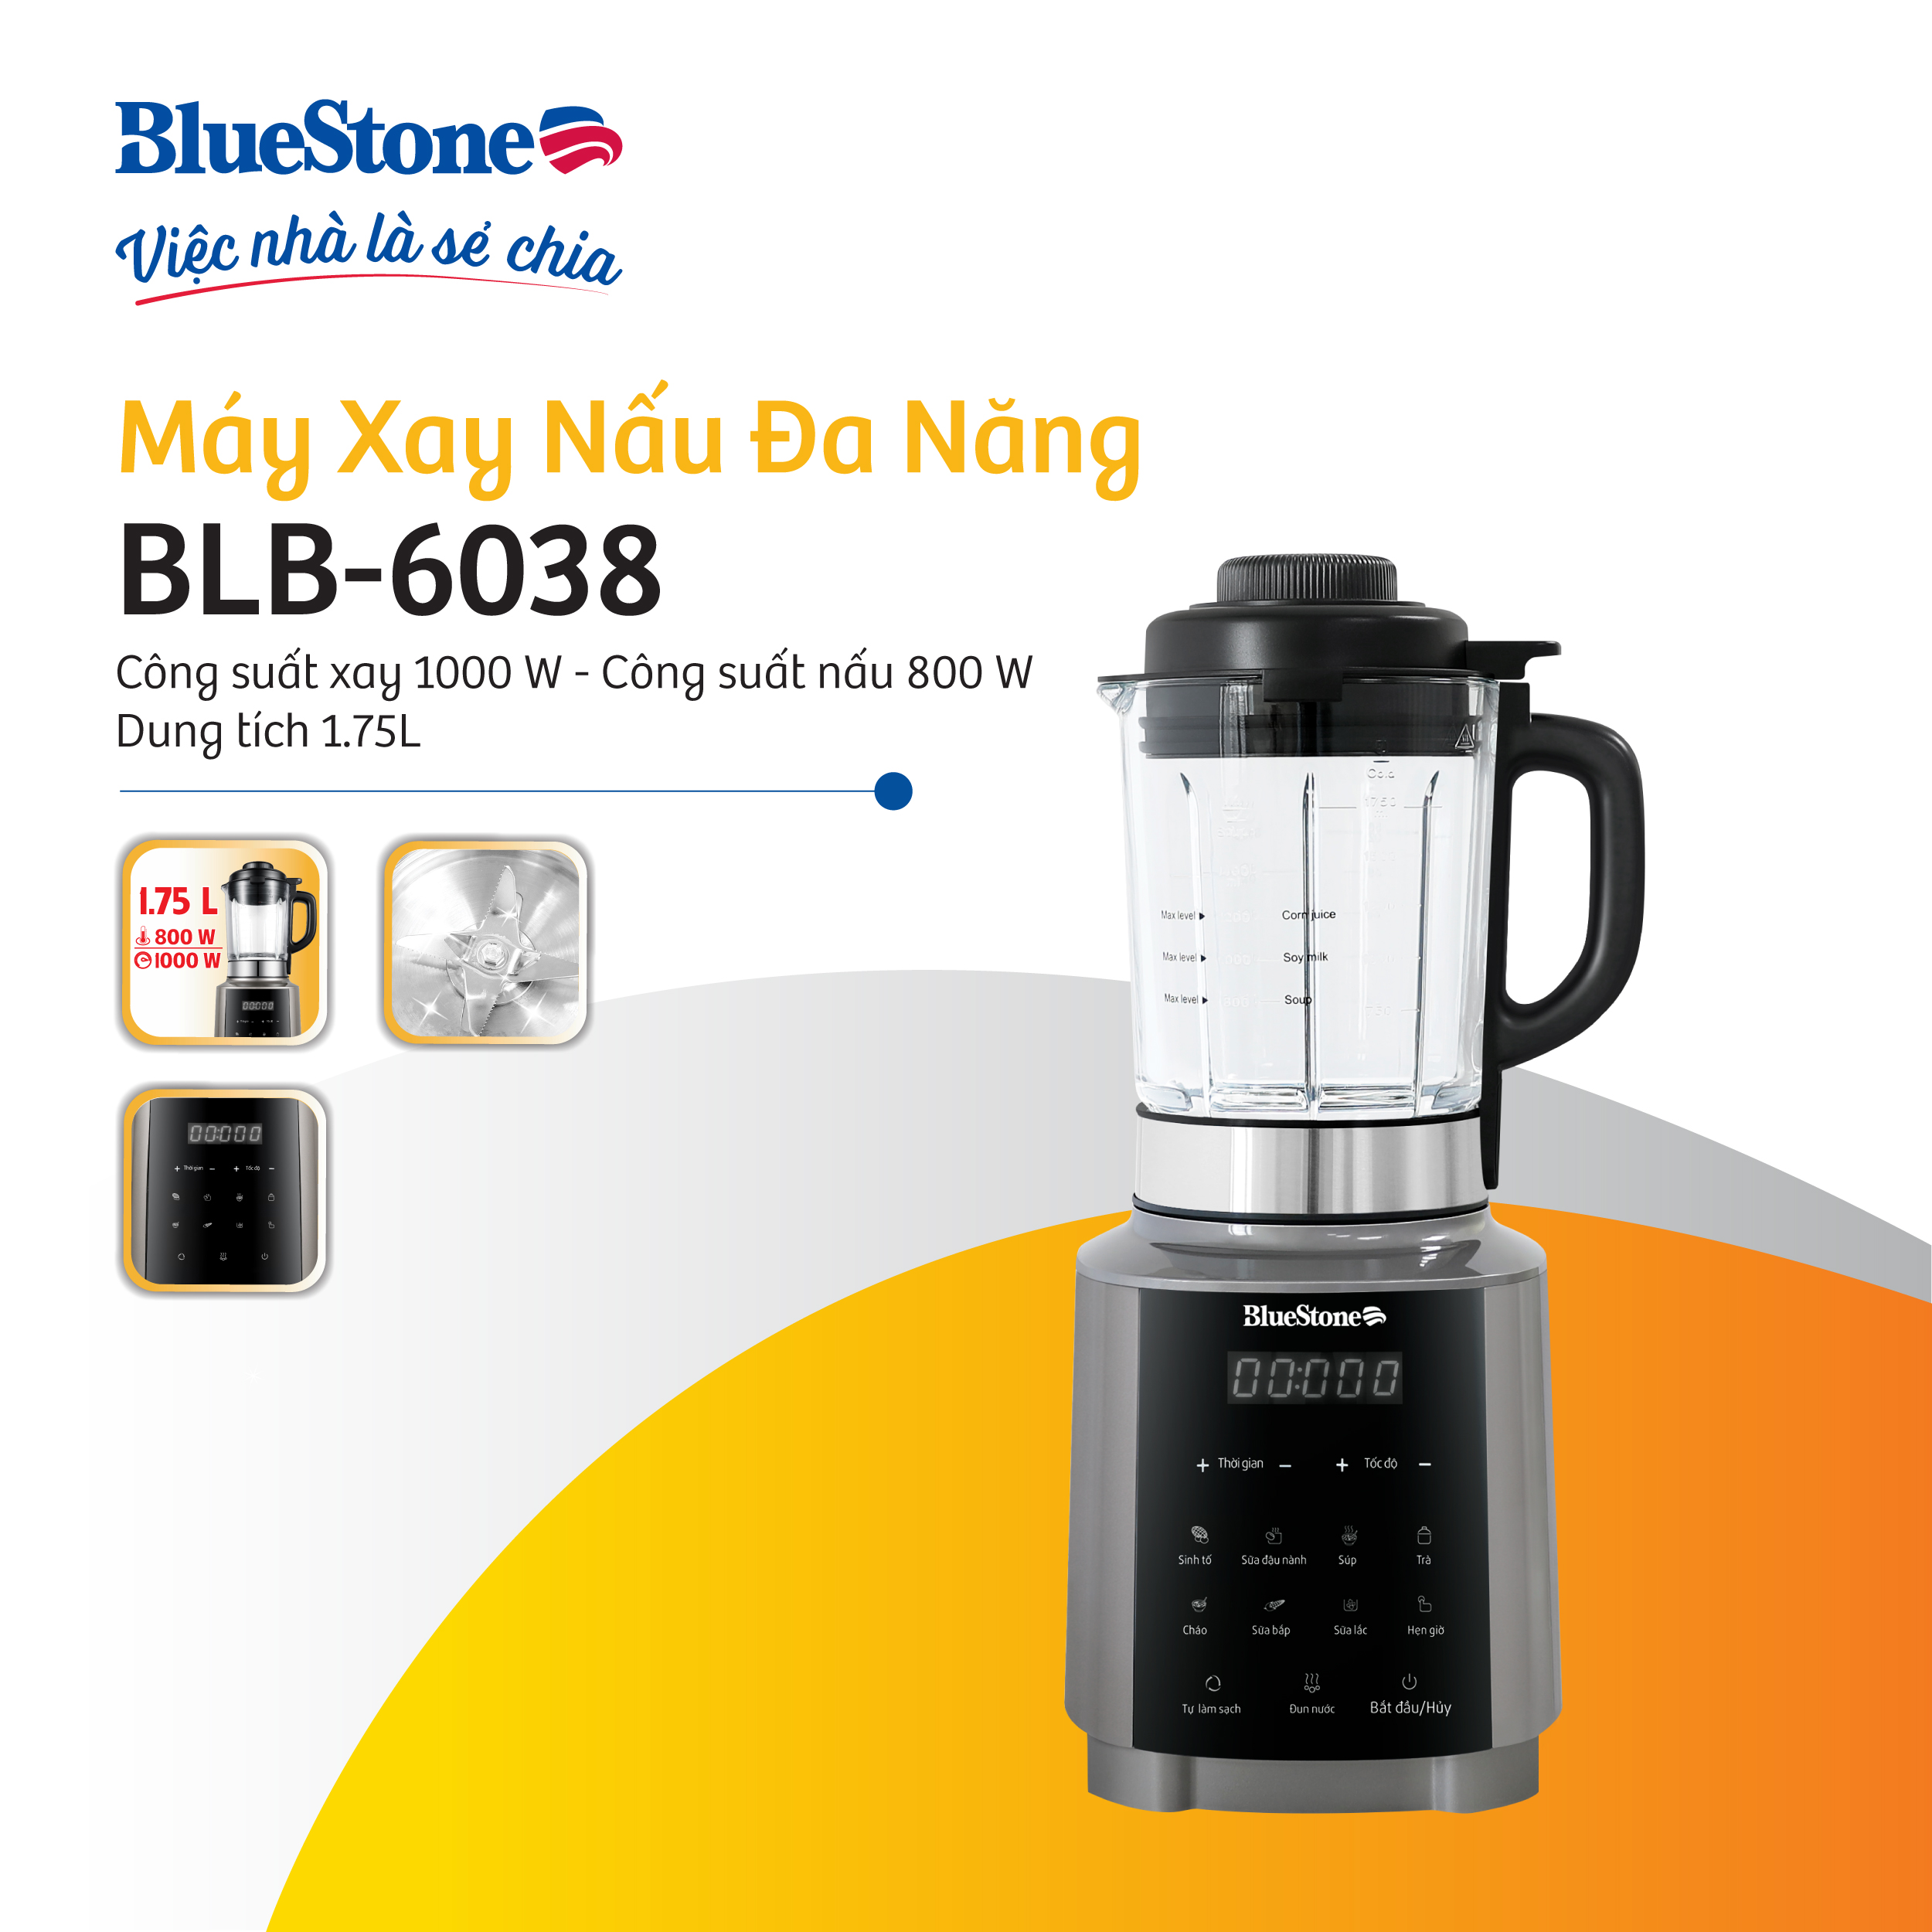 May Xay Nau Đa Nang BlueStone BLB-6038